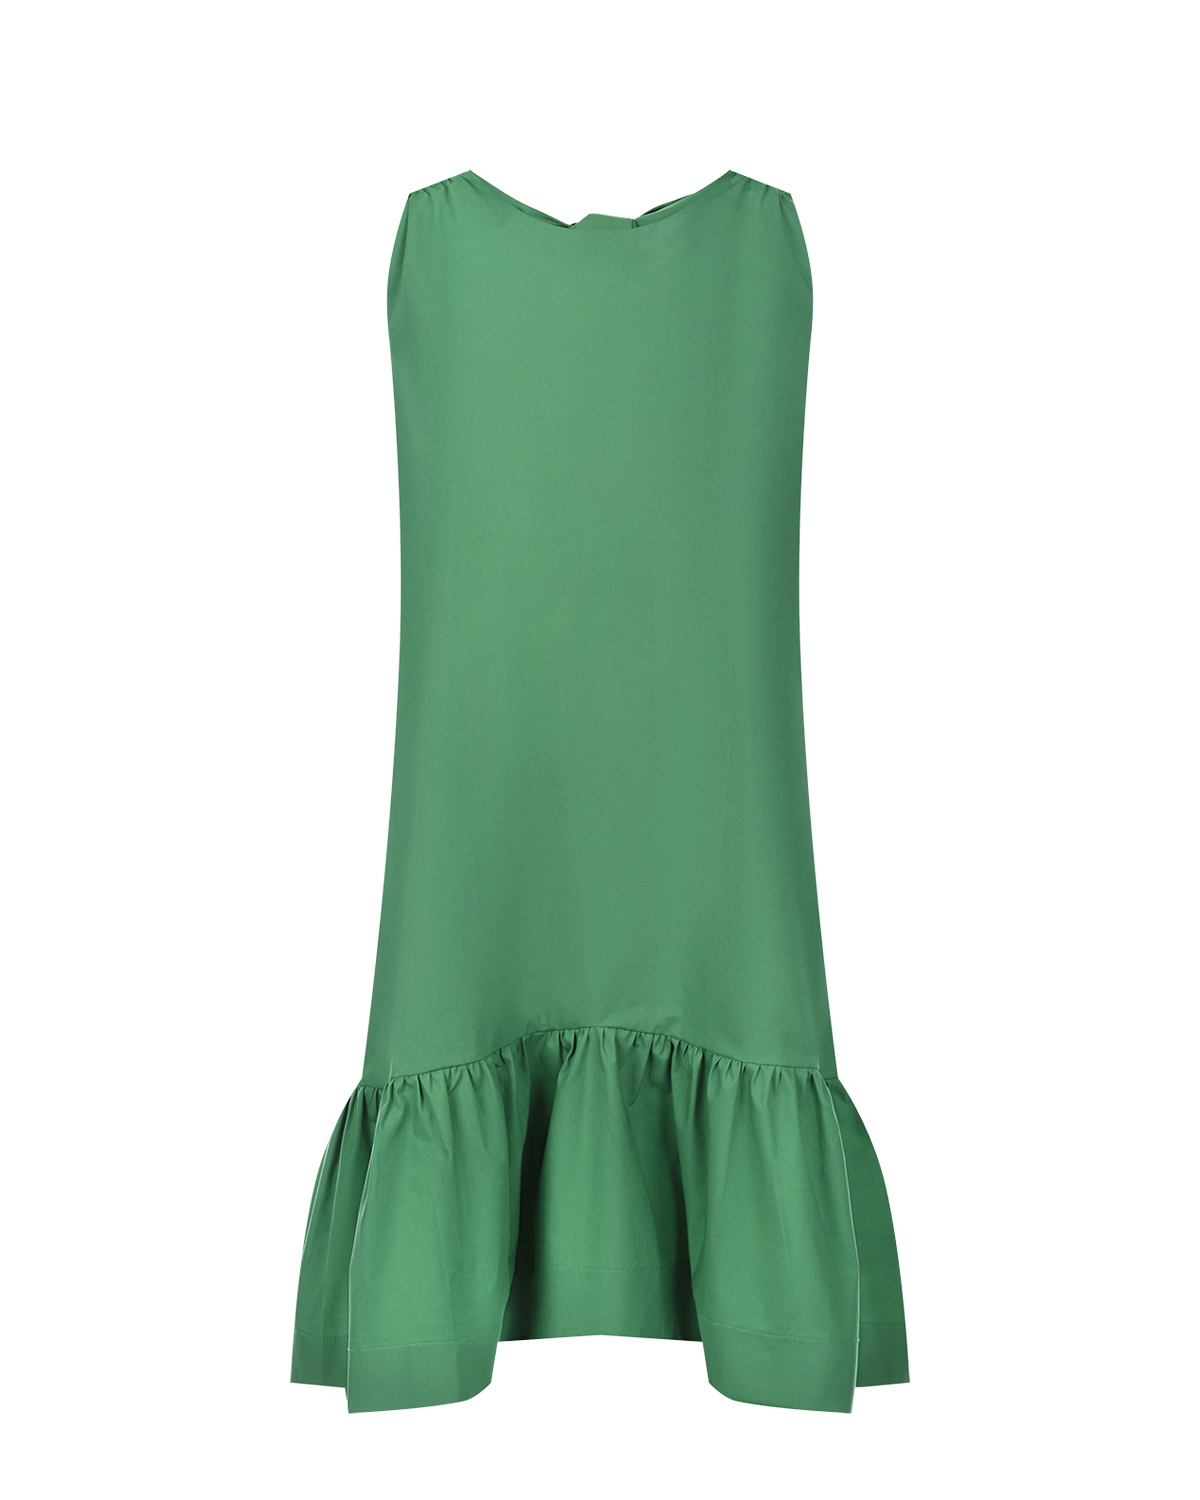 Зеленое платье с бантами на спинке Attesa, размер 40, цвет зеленый